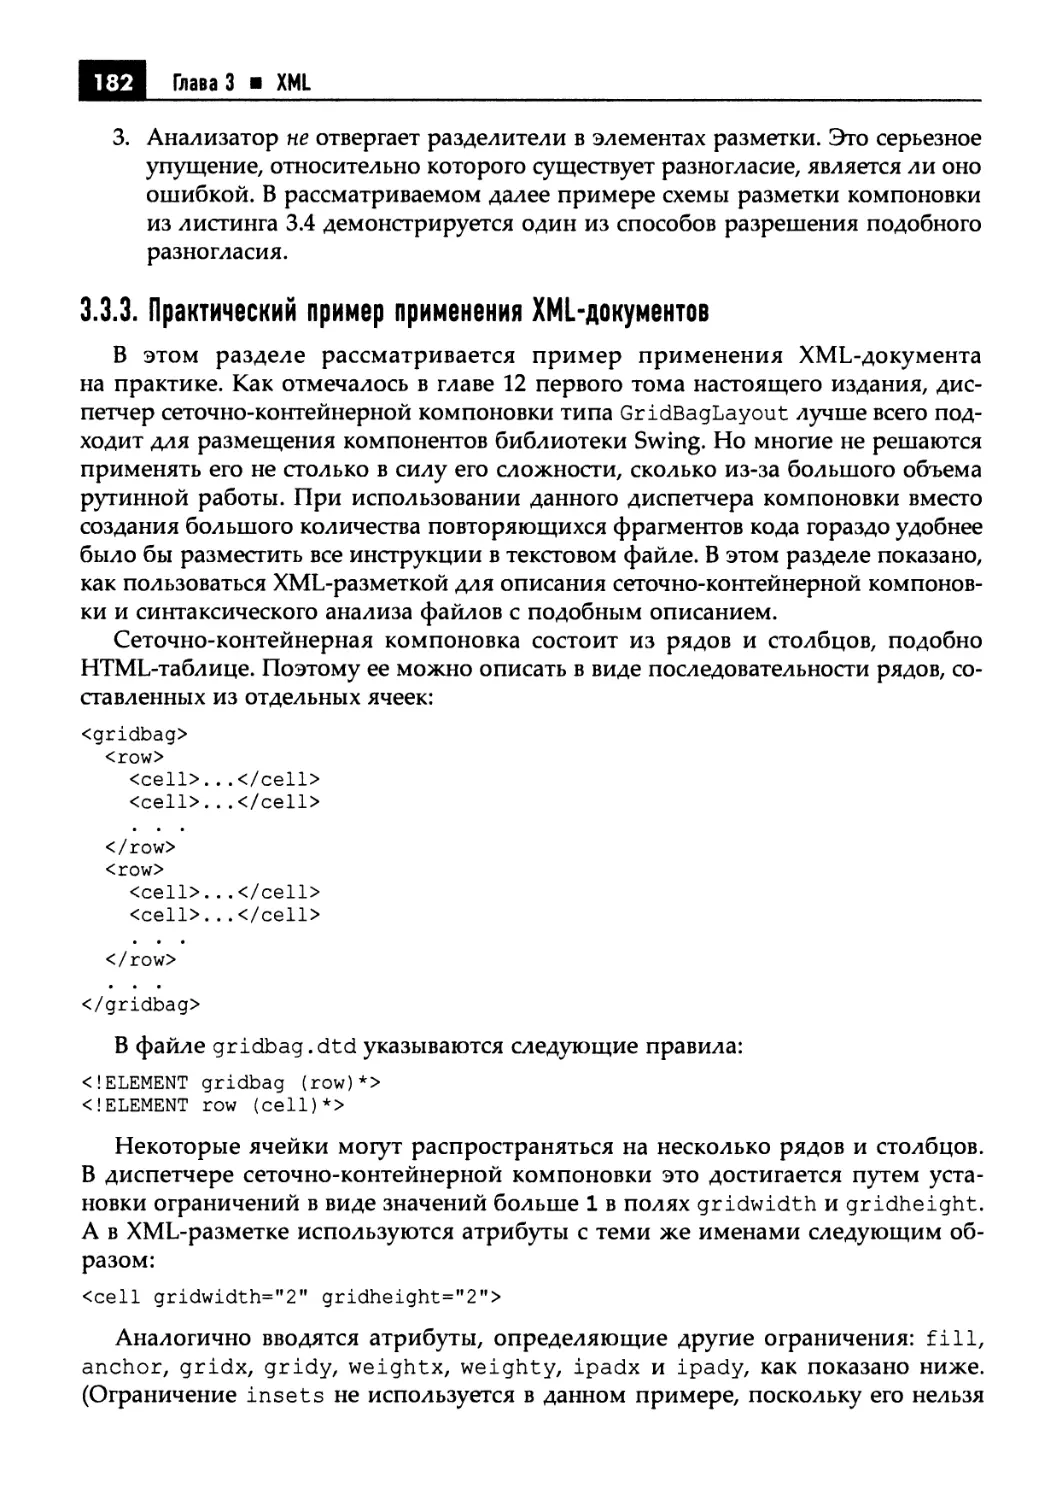 3.3.3. Практический пример применения XML-документов